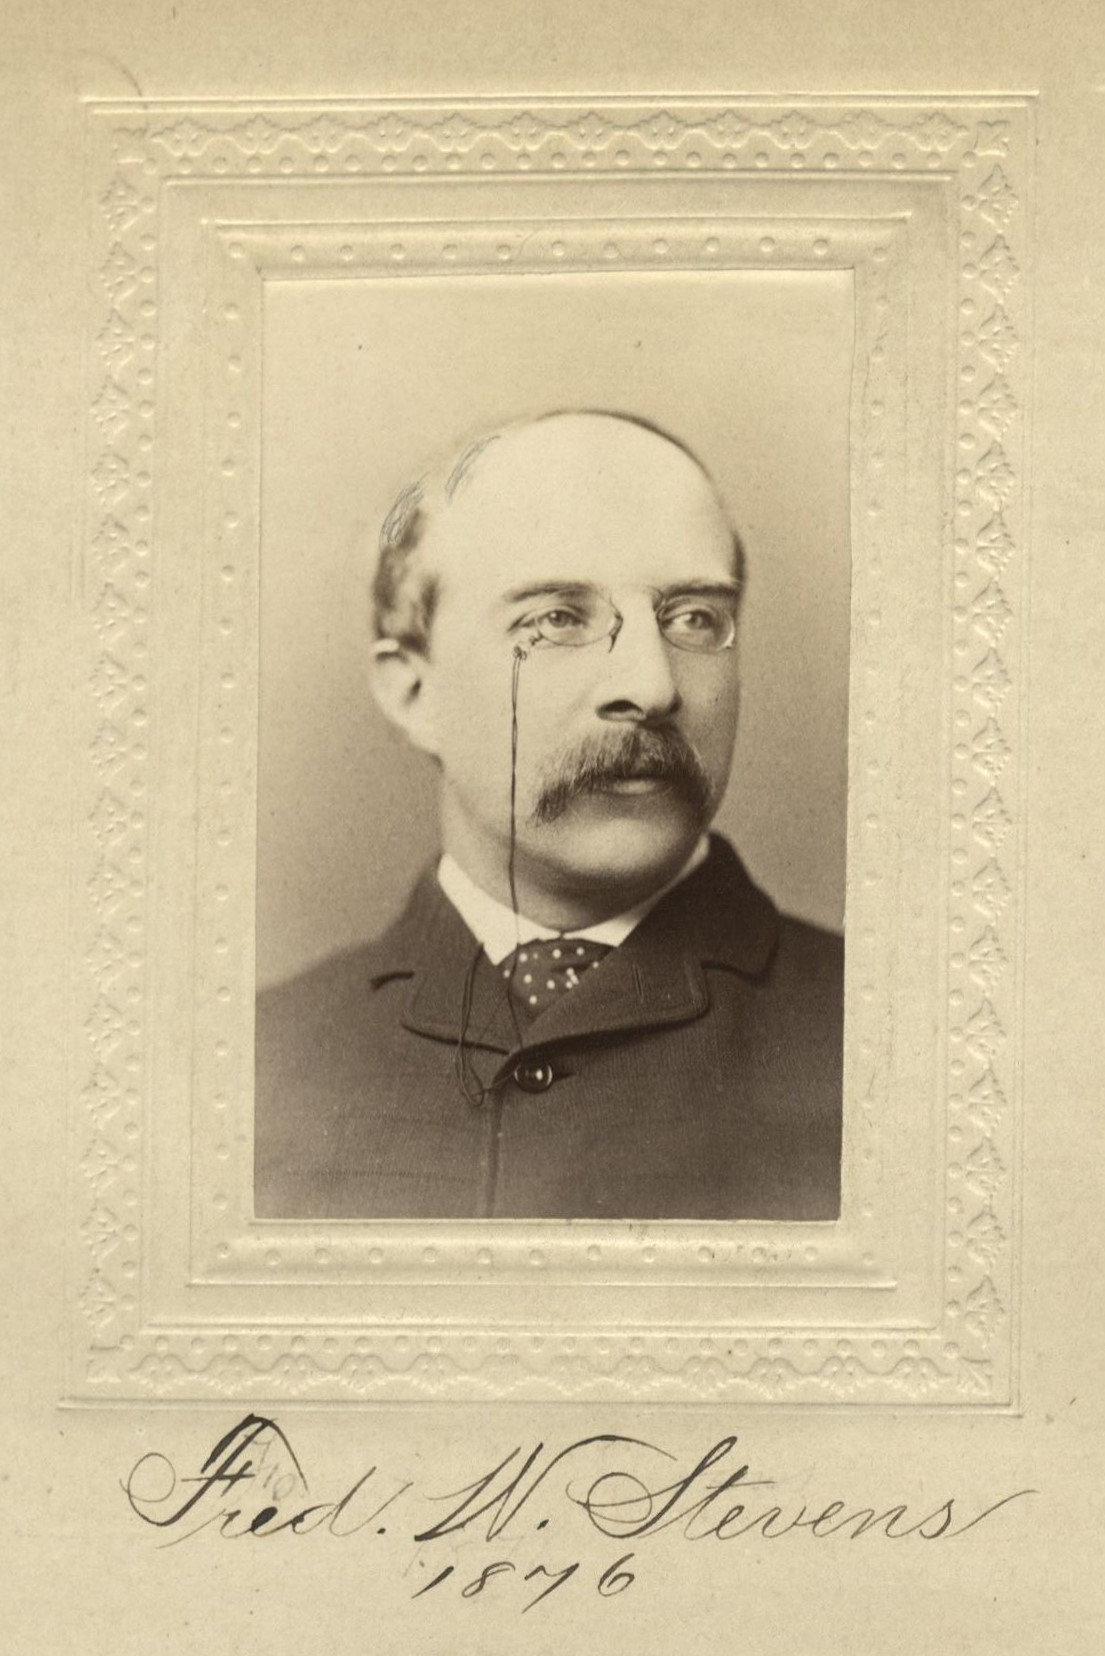 Member portrait of Frederic W. Stevens